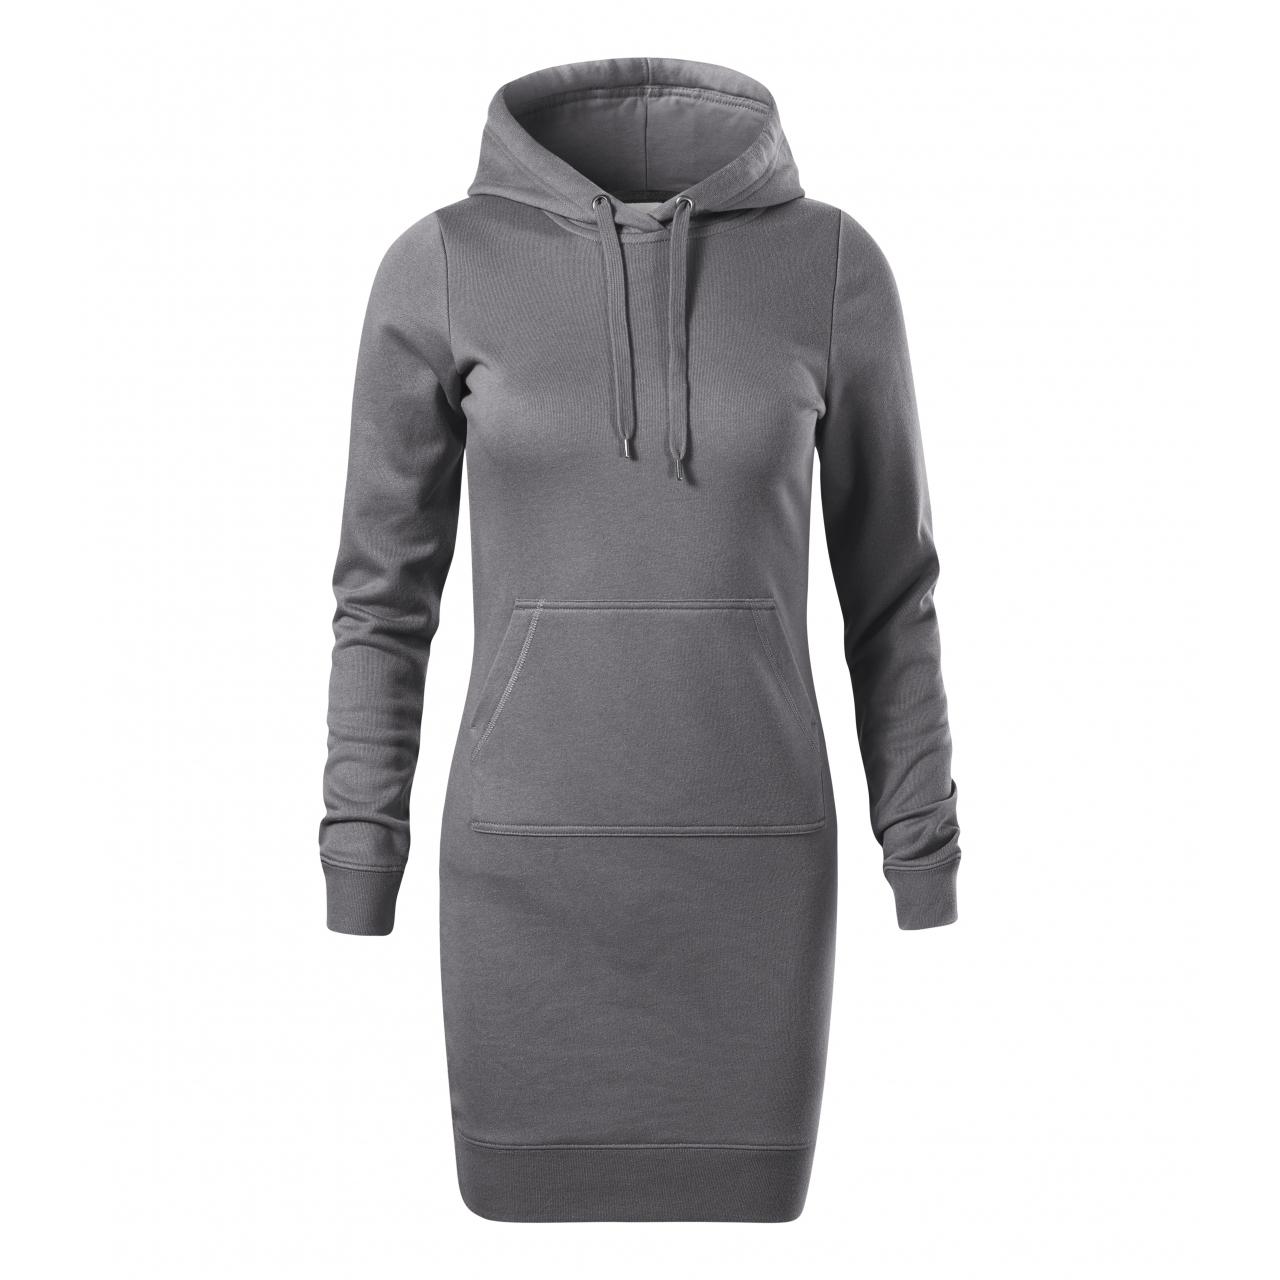 Šaty dámské Malfini Snap - tmavě šedé, XL